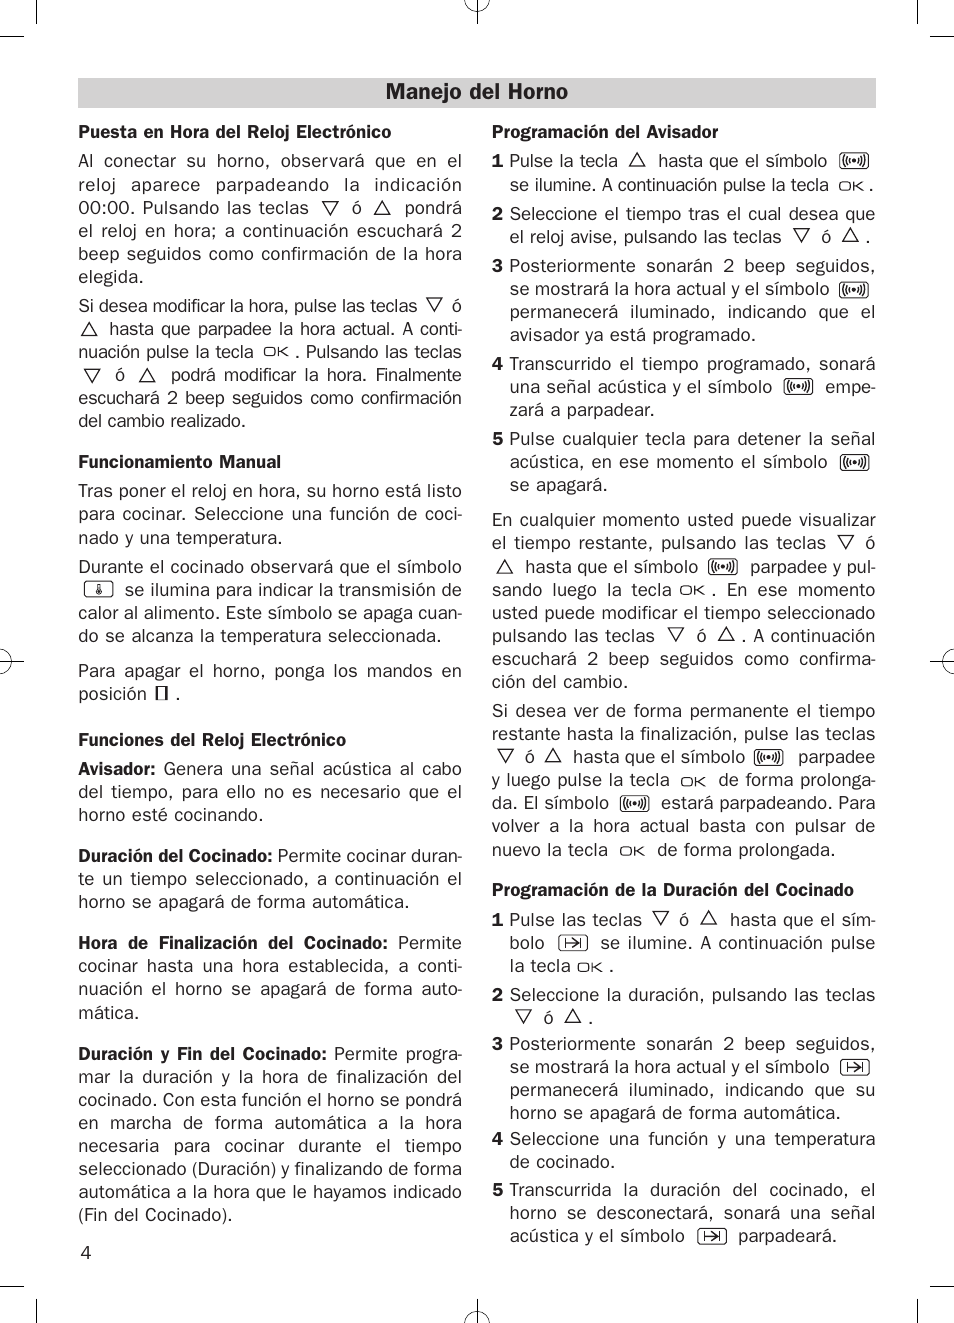 Manejo del horno | Teka HKE 635 User Manual | Page 4 / 24